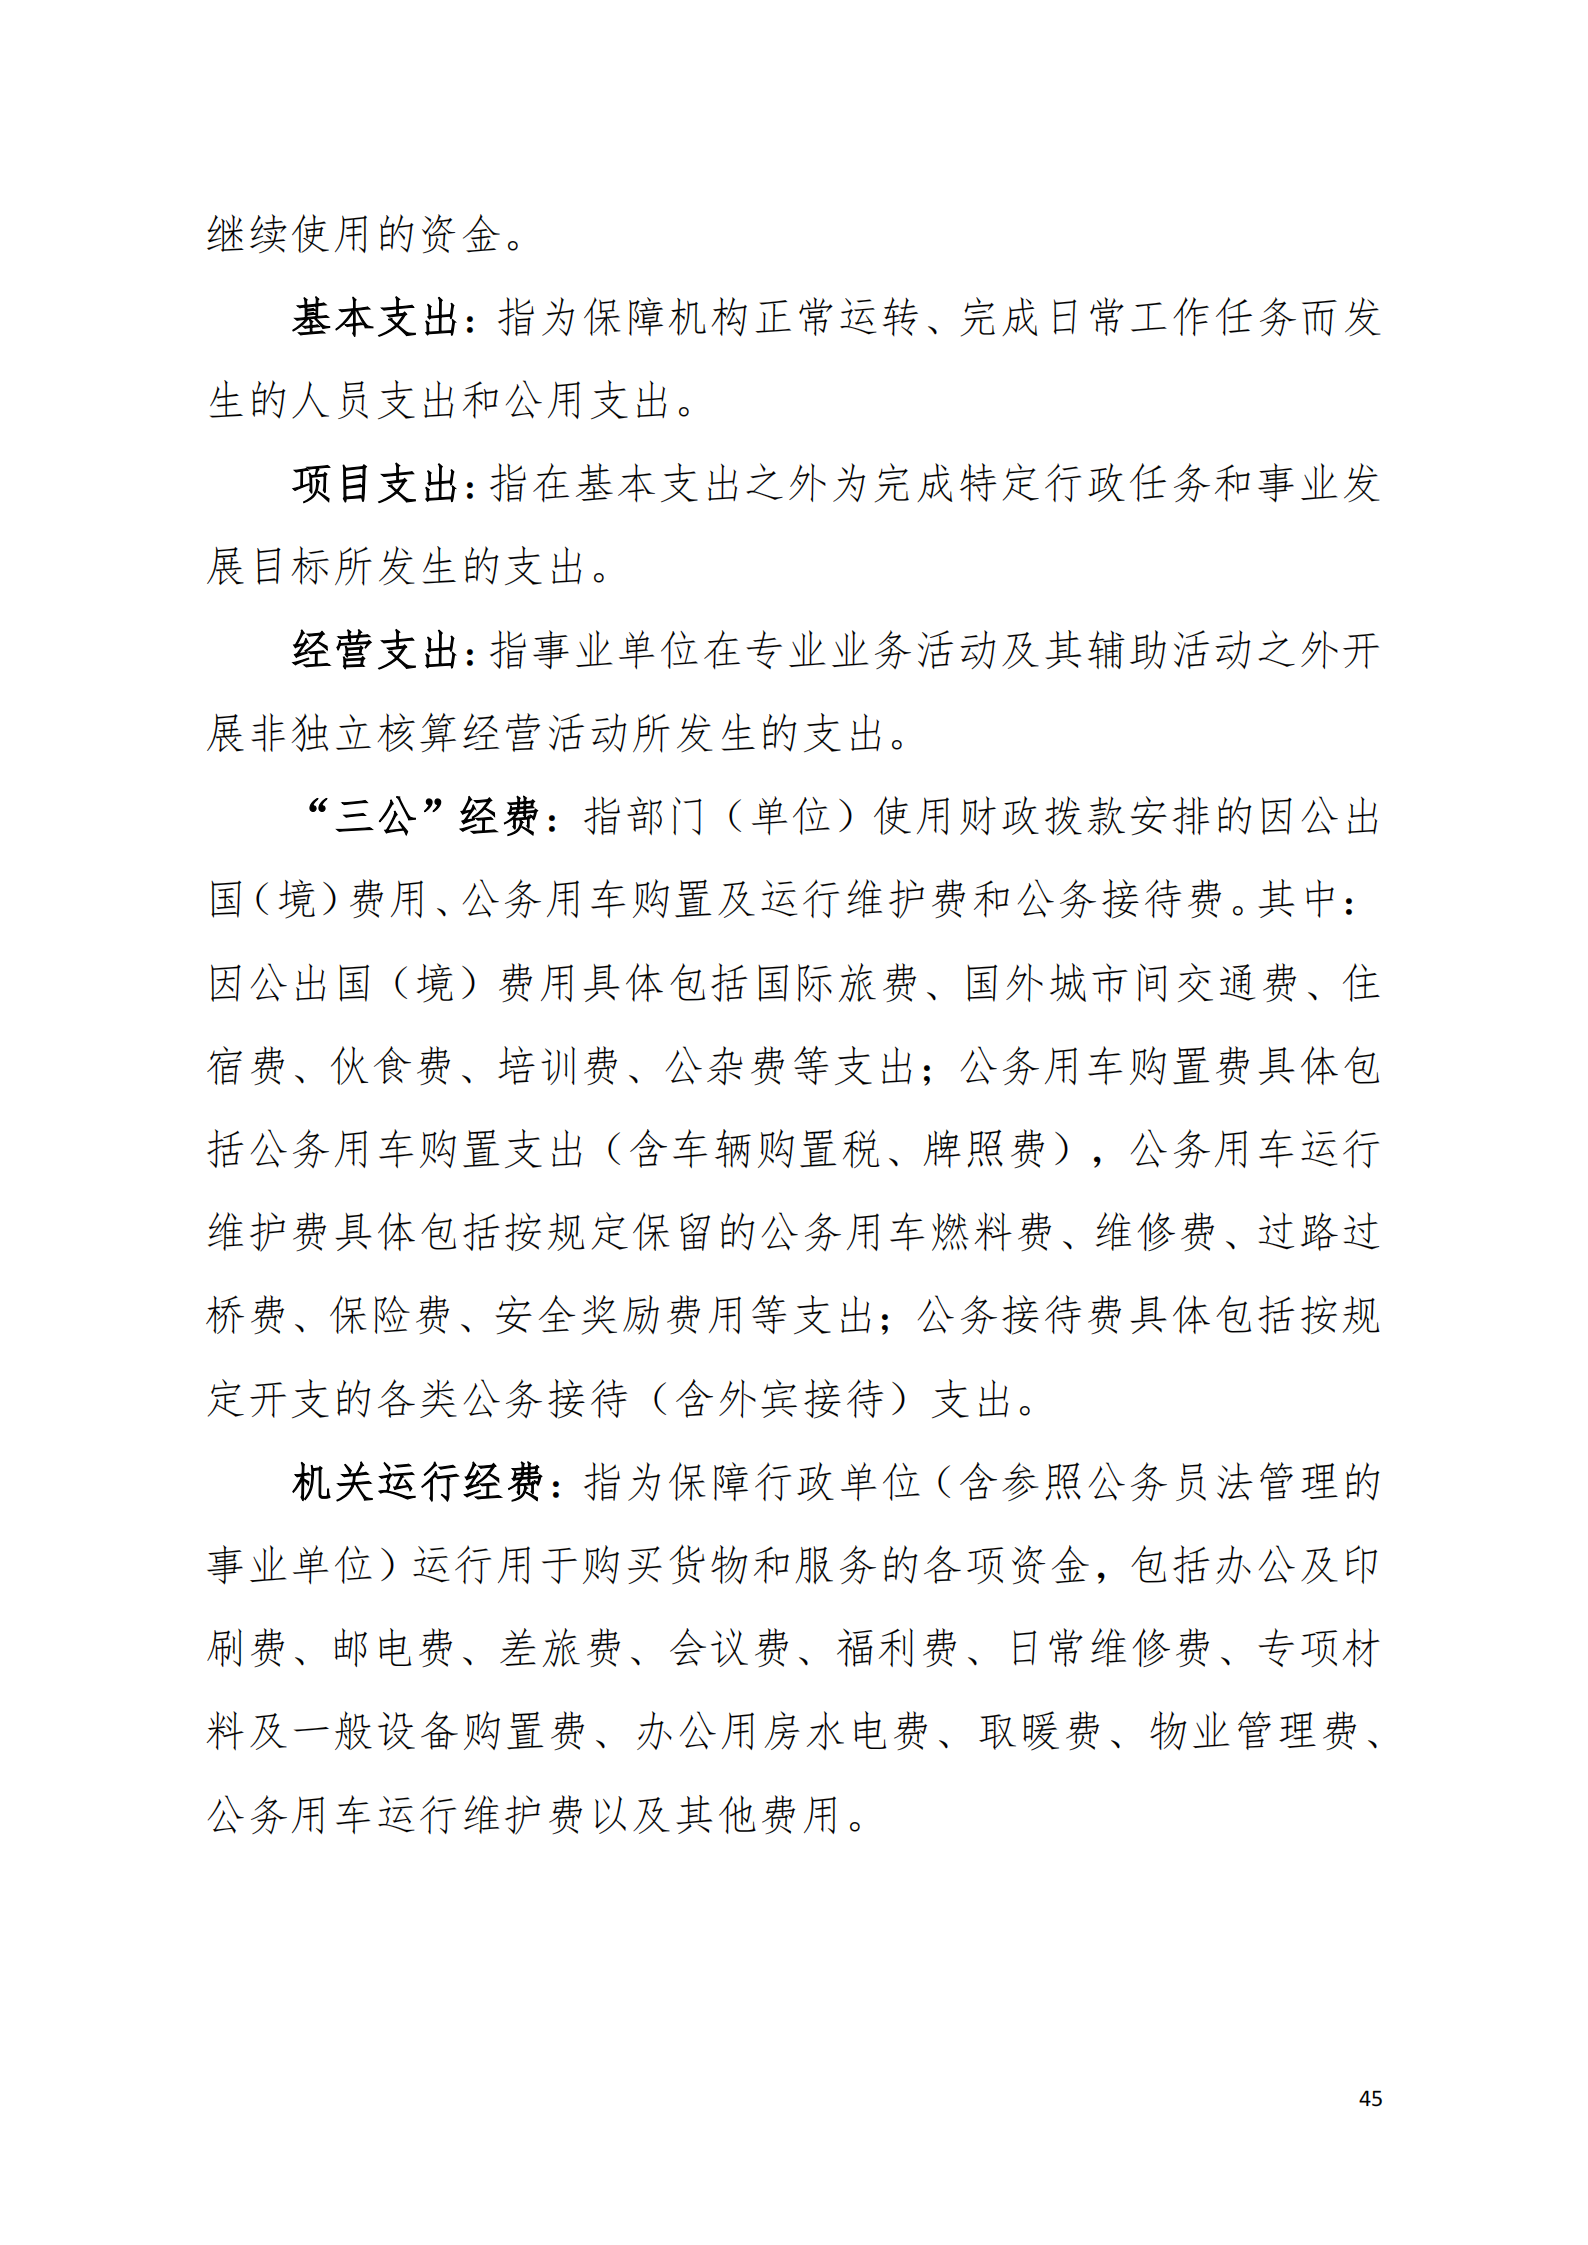 2022年度阳江高新技术产业开发区社会事务管理局部门决算_03.png